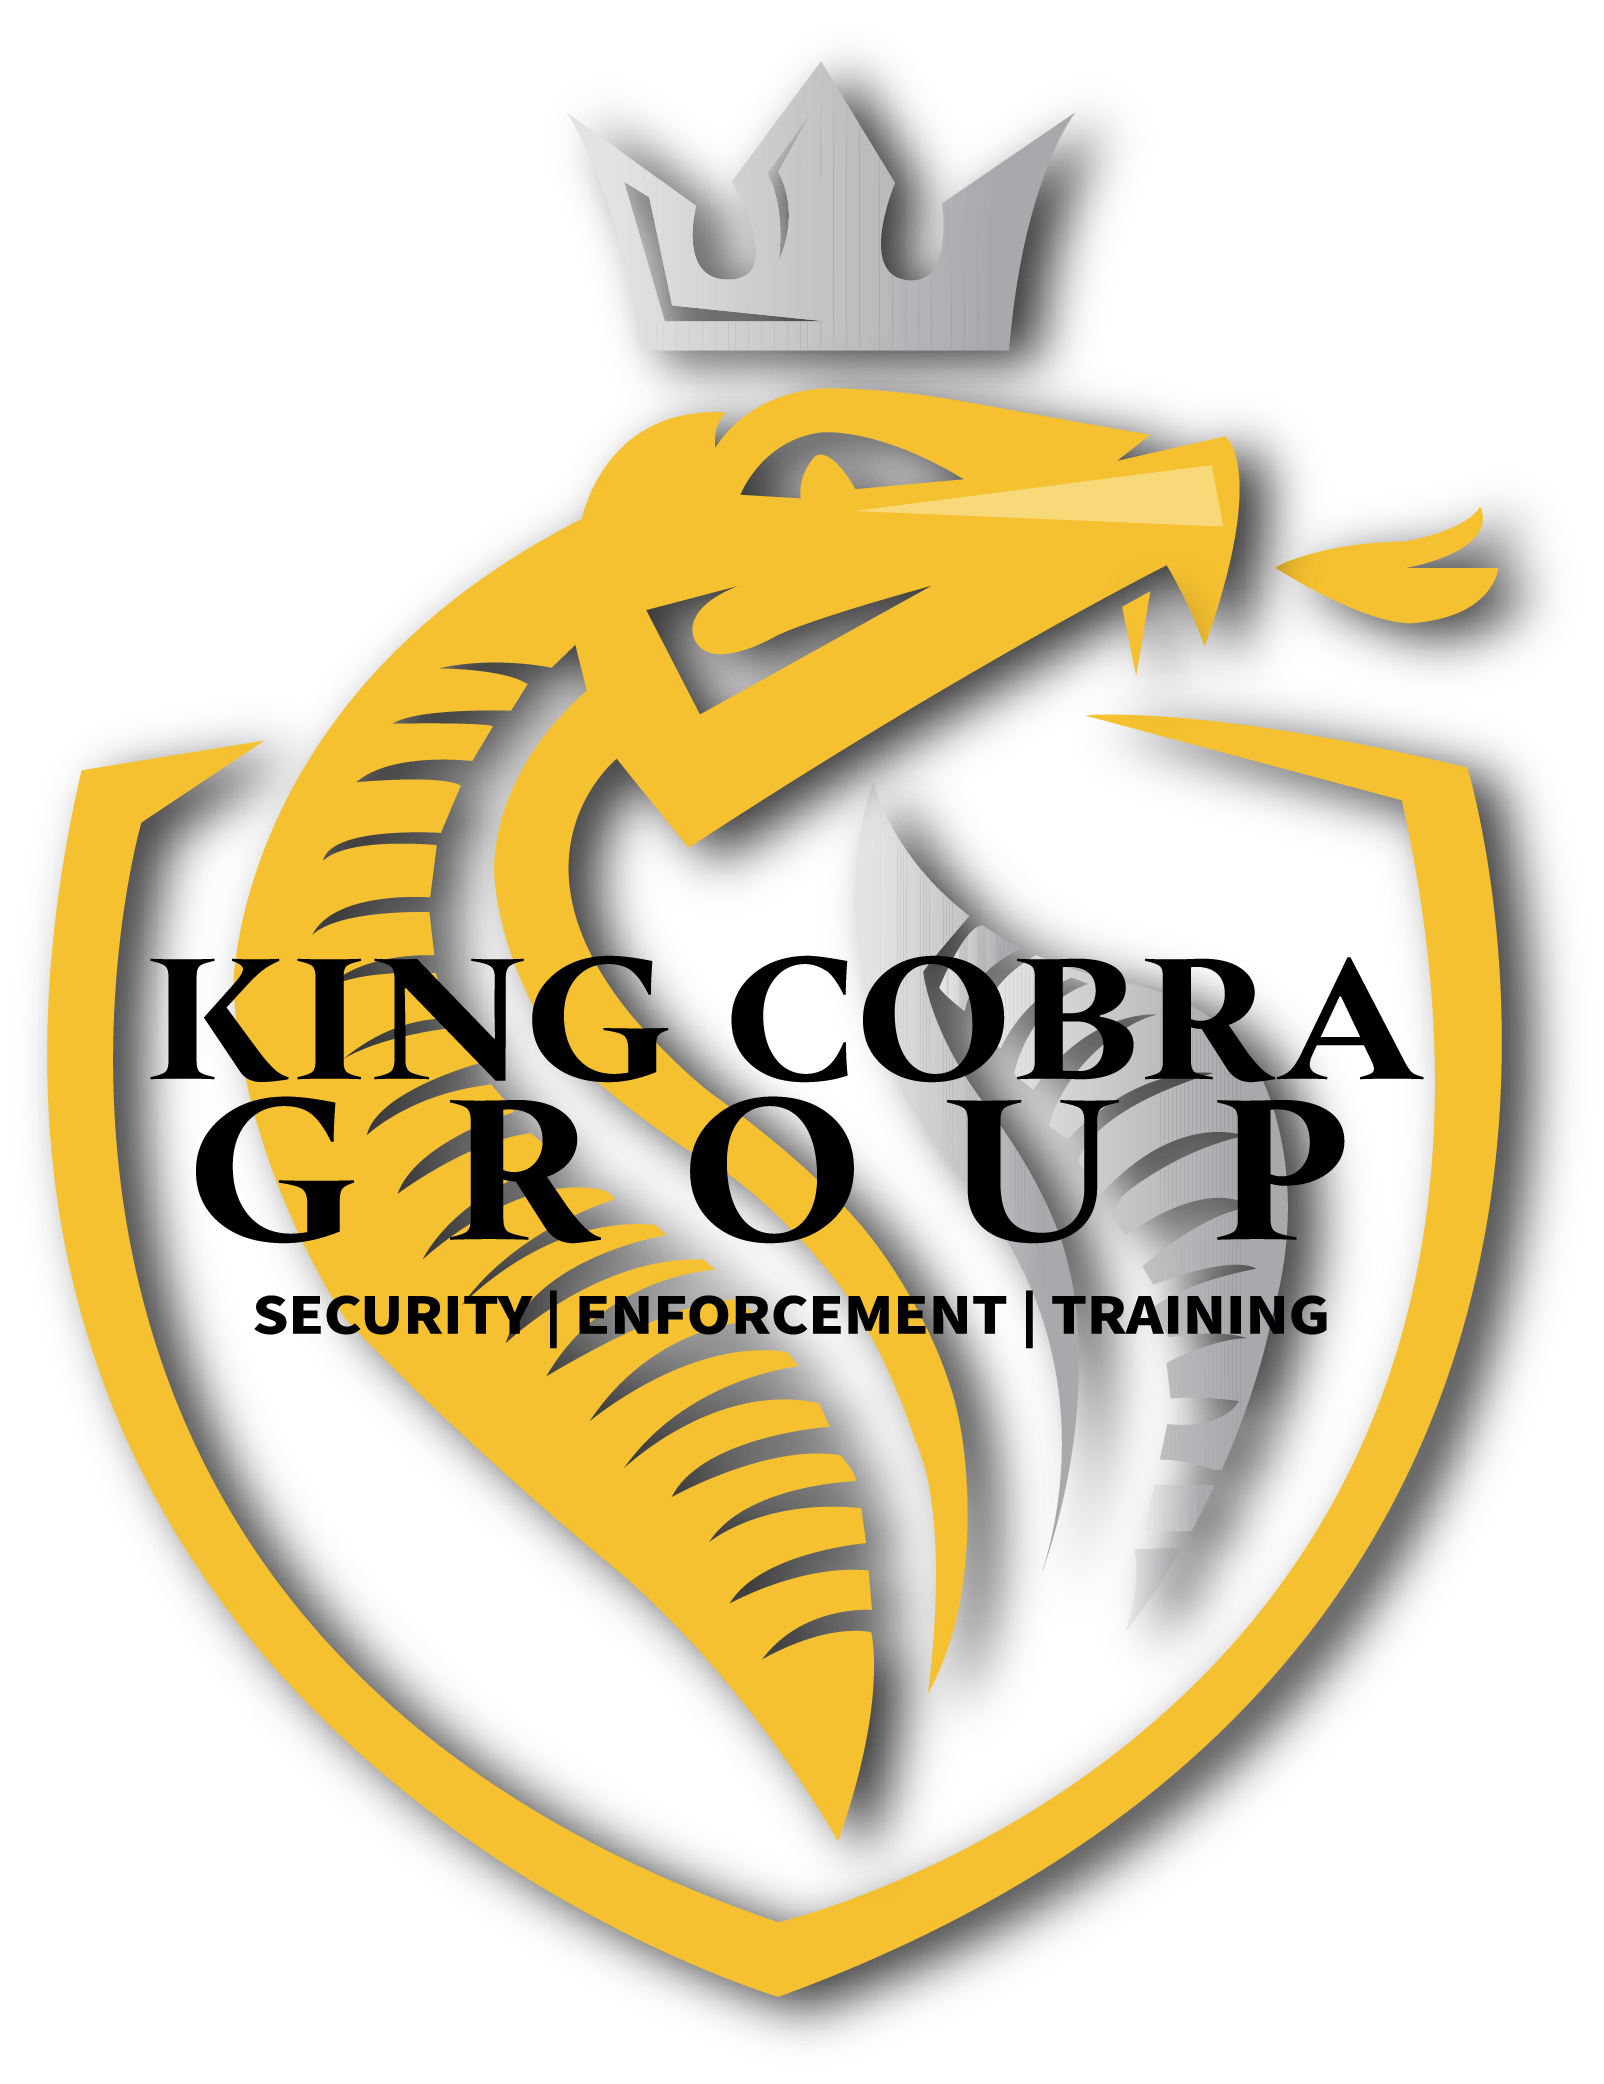 King Cobra Security